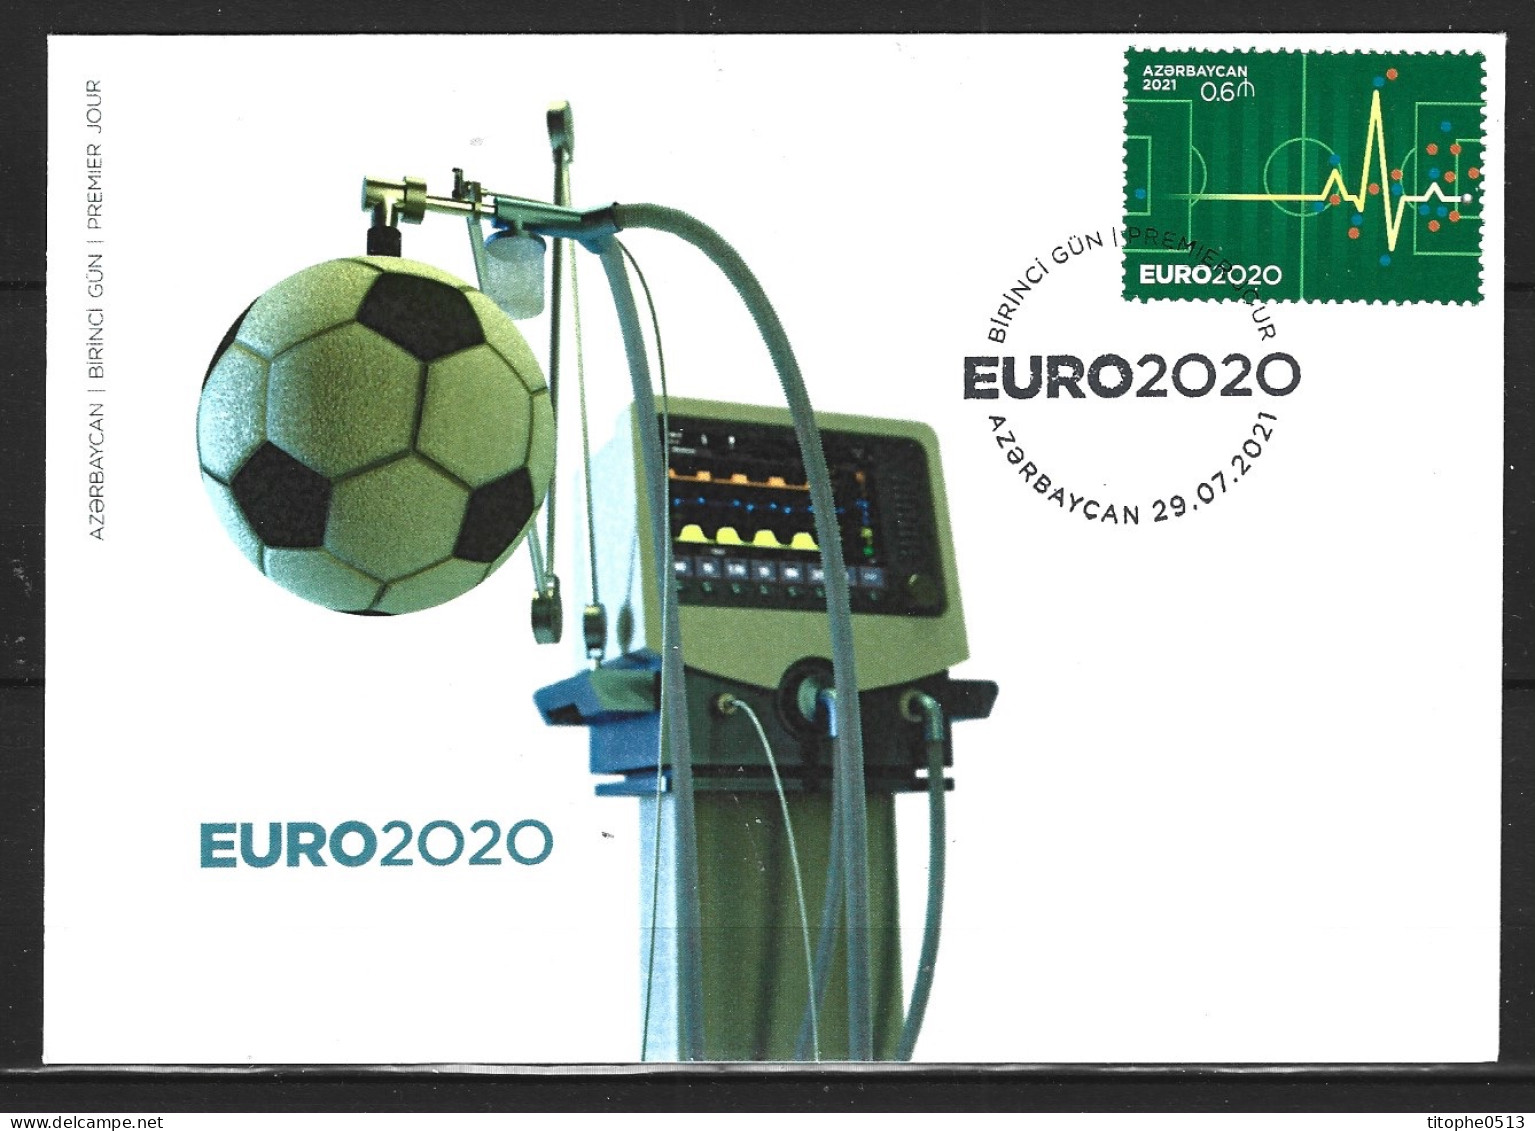 AZERBAIDJAN. Timbre De 2021 Sur Enveloppe 1er Jour. Euro 2020. - Championnat D'Europe (UEFA)